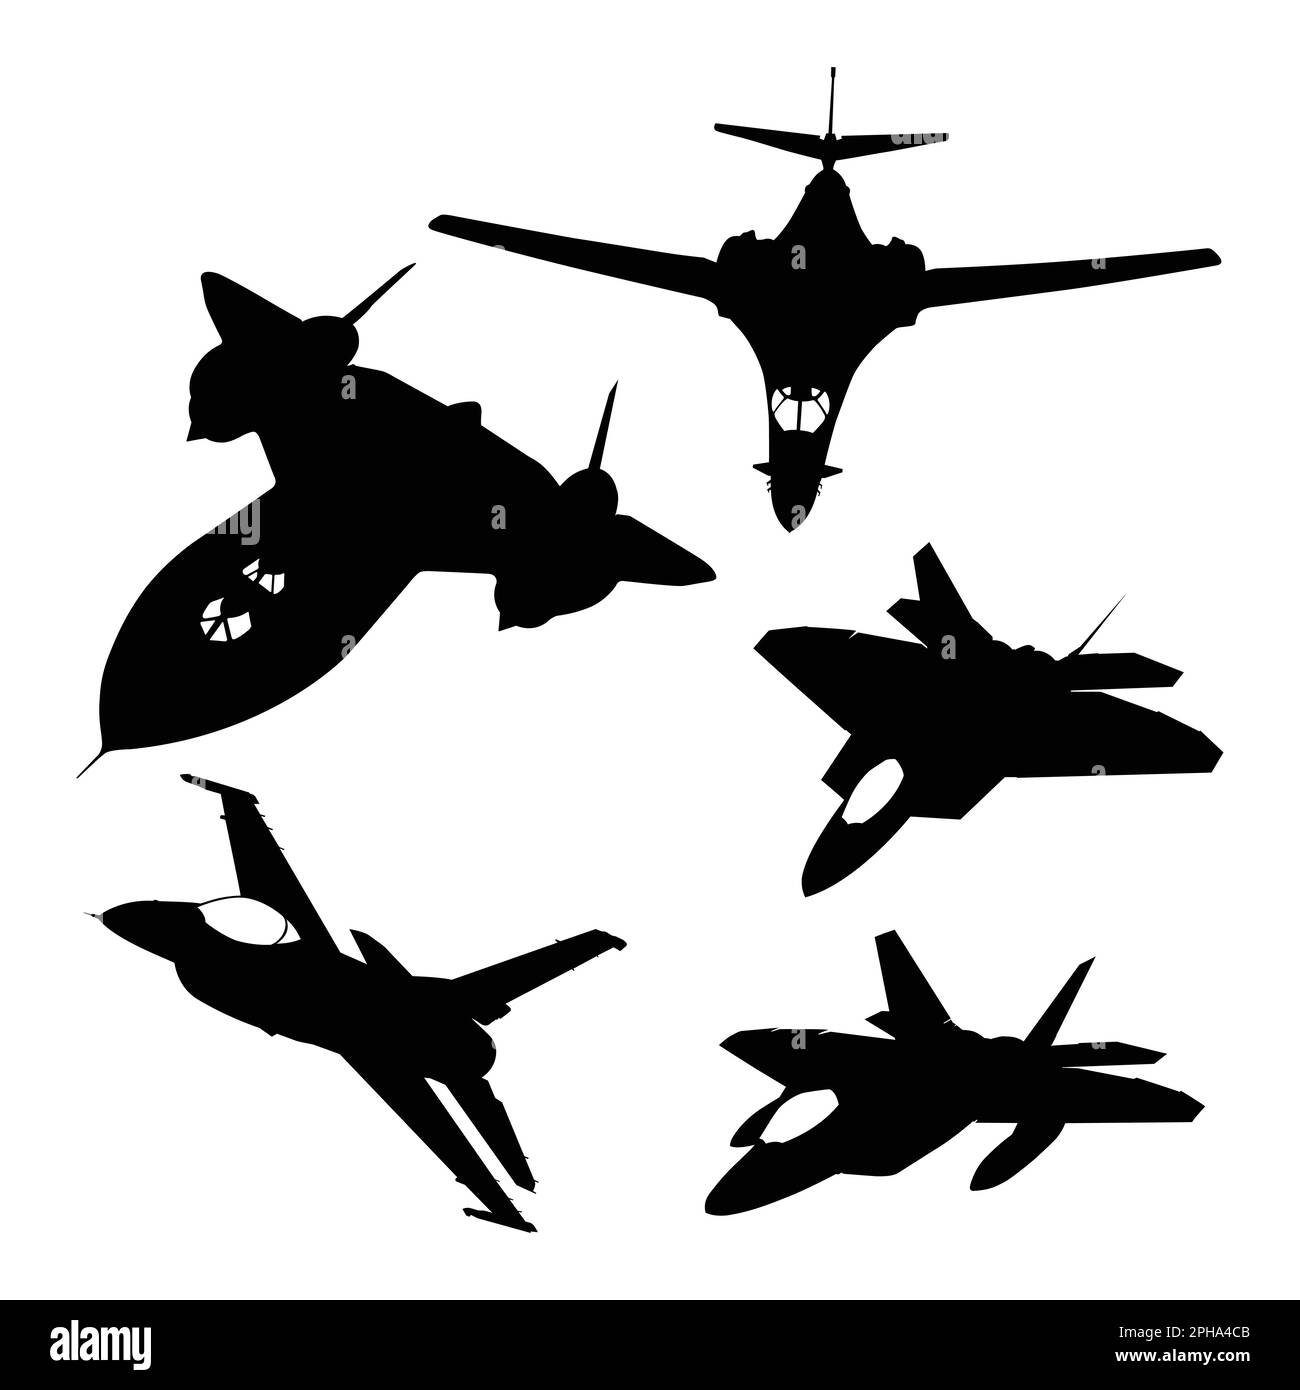 Ensemble de silhouettes d'avions militaires sur fond blanc. Illustration vectorielle Illustration de Vecteur